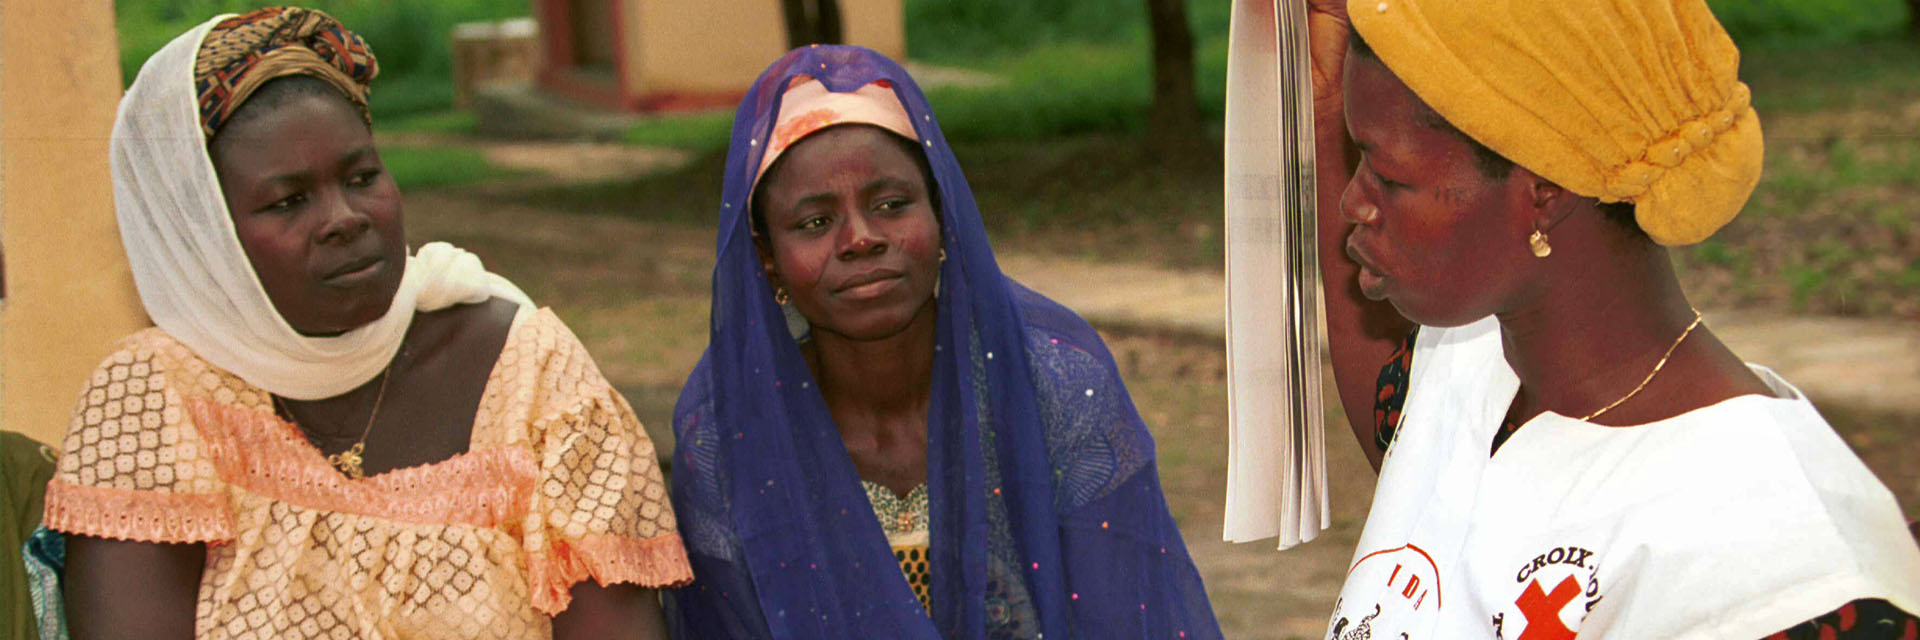 Foto: Togolesische Rotkreuzfreiwillige im Gespräch mit 2 Müttern